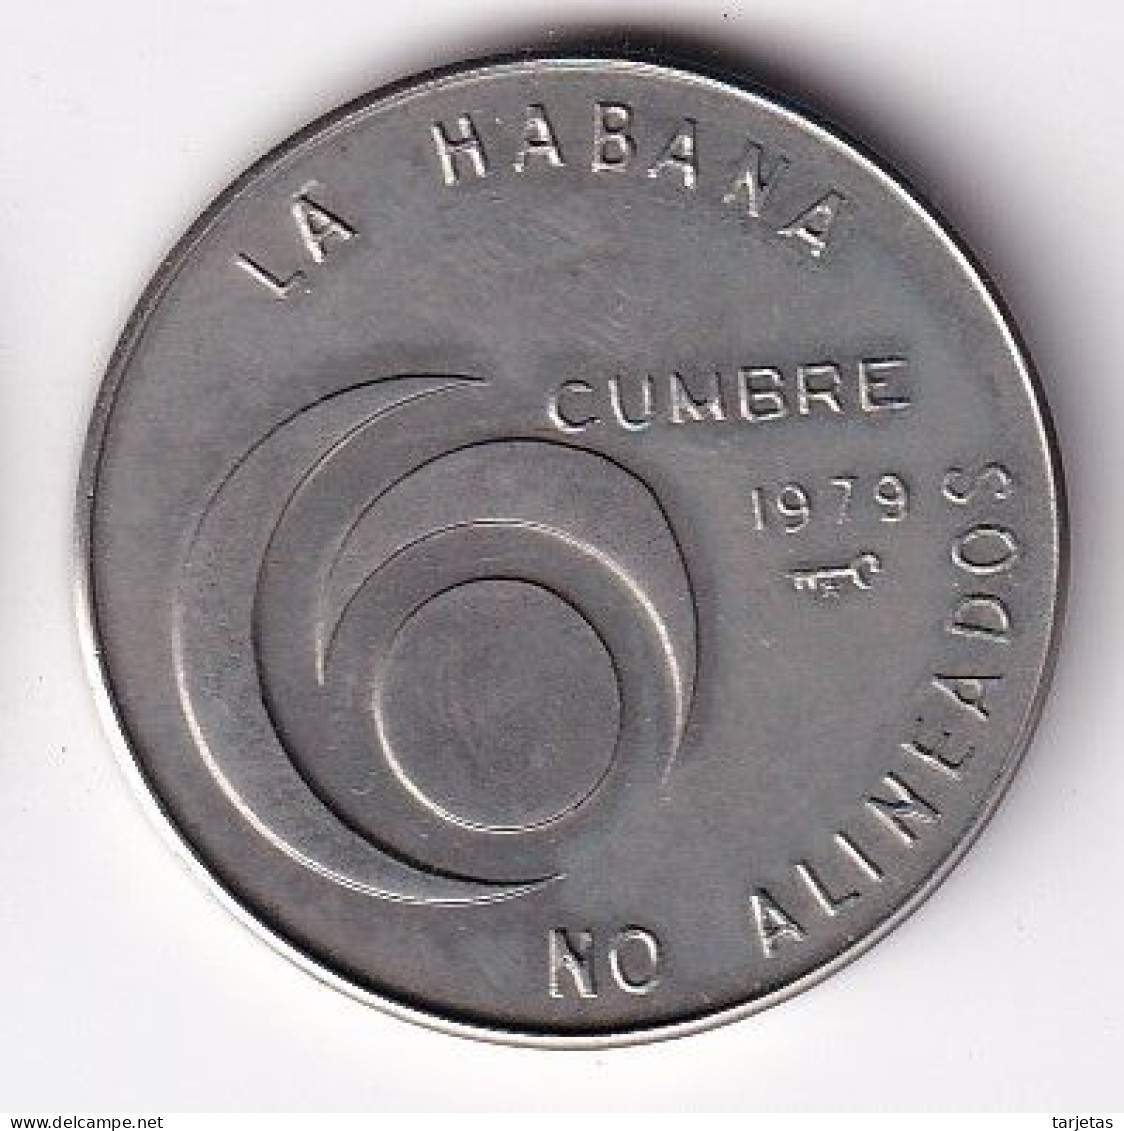 MONEDA DE CUBA DE 1 PESO DEL AÑO 1979 CUMBRE DE LA HABANA (COIN)  (NUEVA - UNC) - Kuba